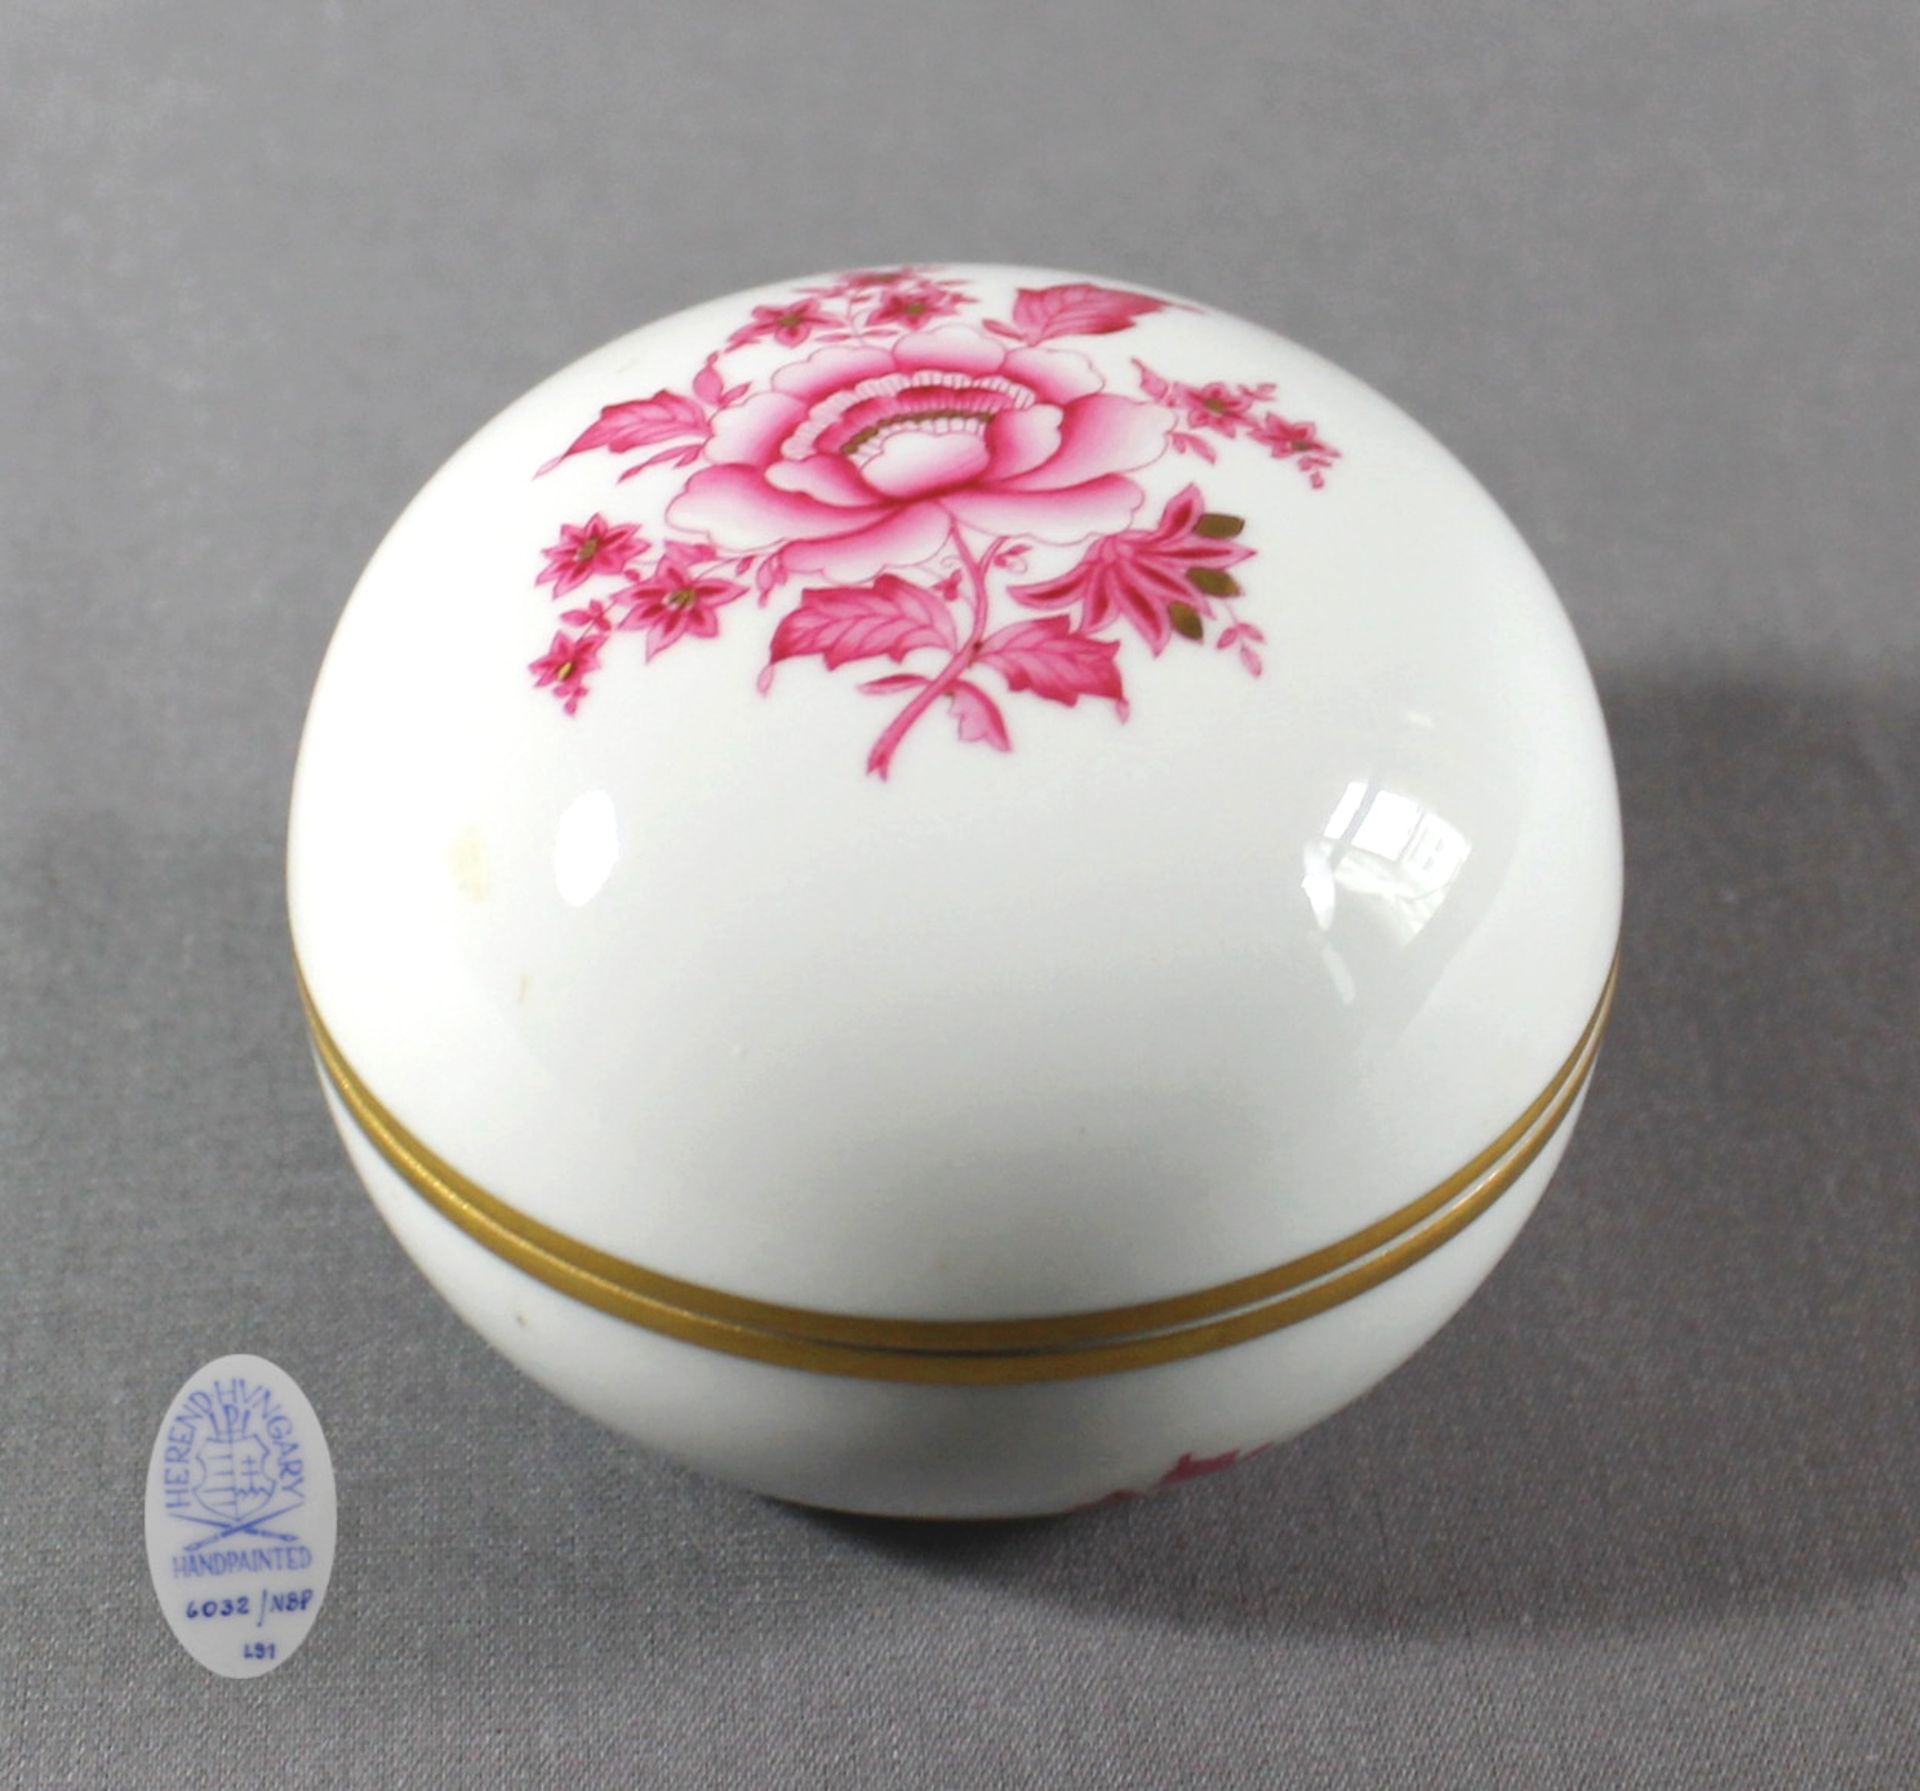 1 kleine runde Deckeldose Porzellan „Herend“, Blumendekor in purpur mit Goldstaffage auf Glasur, H